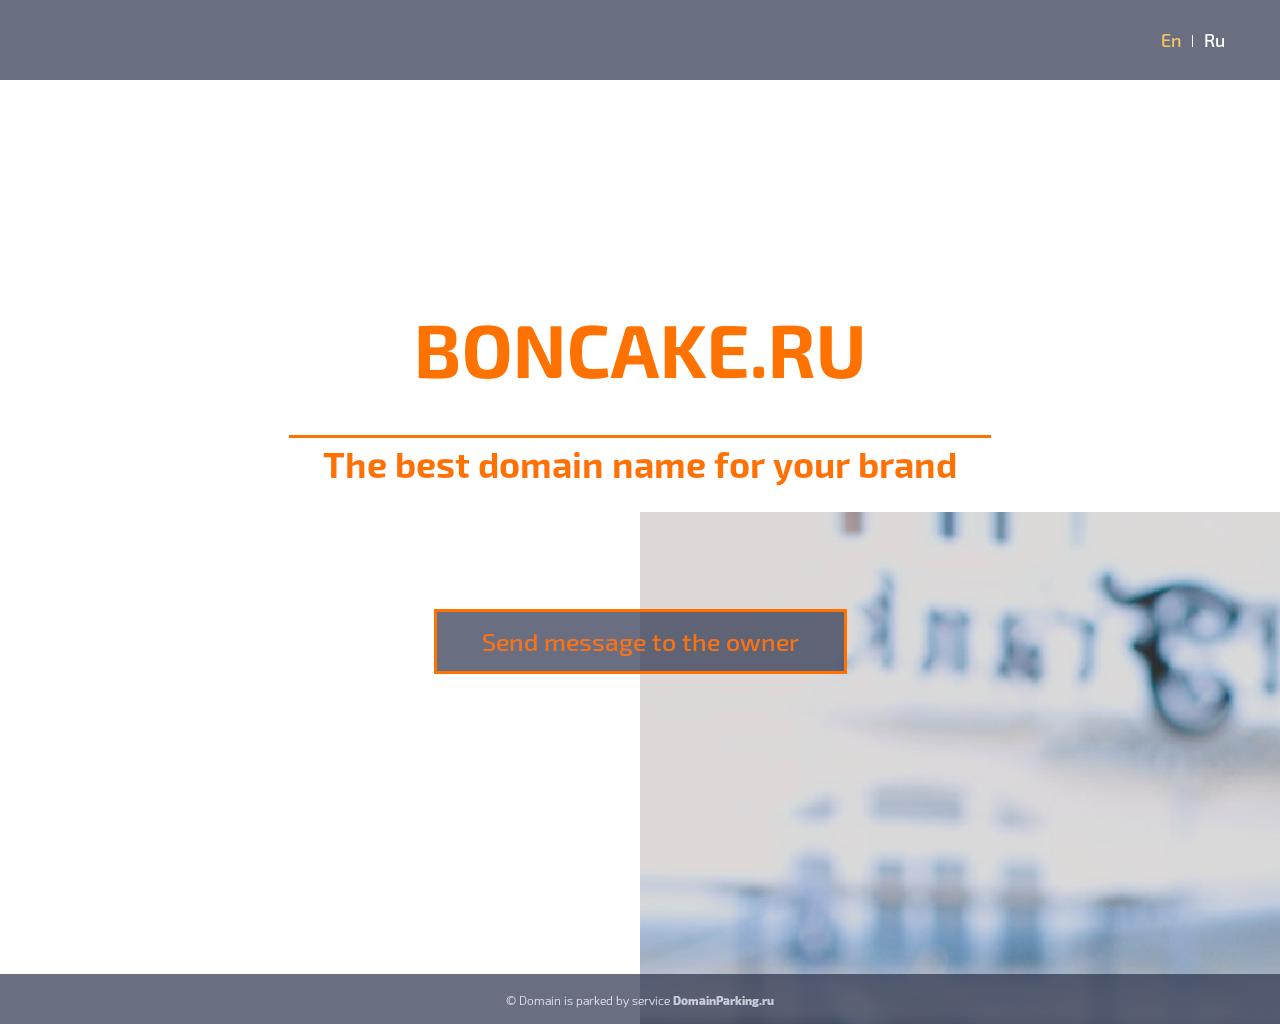 Изображение сайта boncake.ru в разрешении 1280x1024